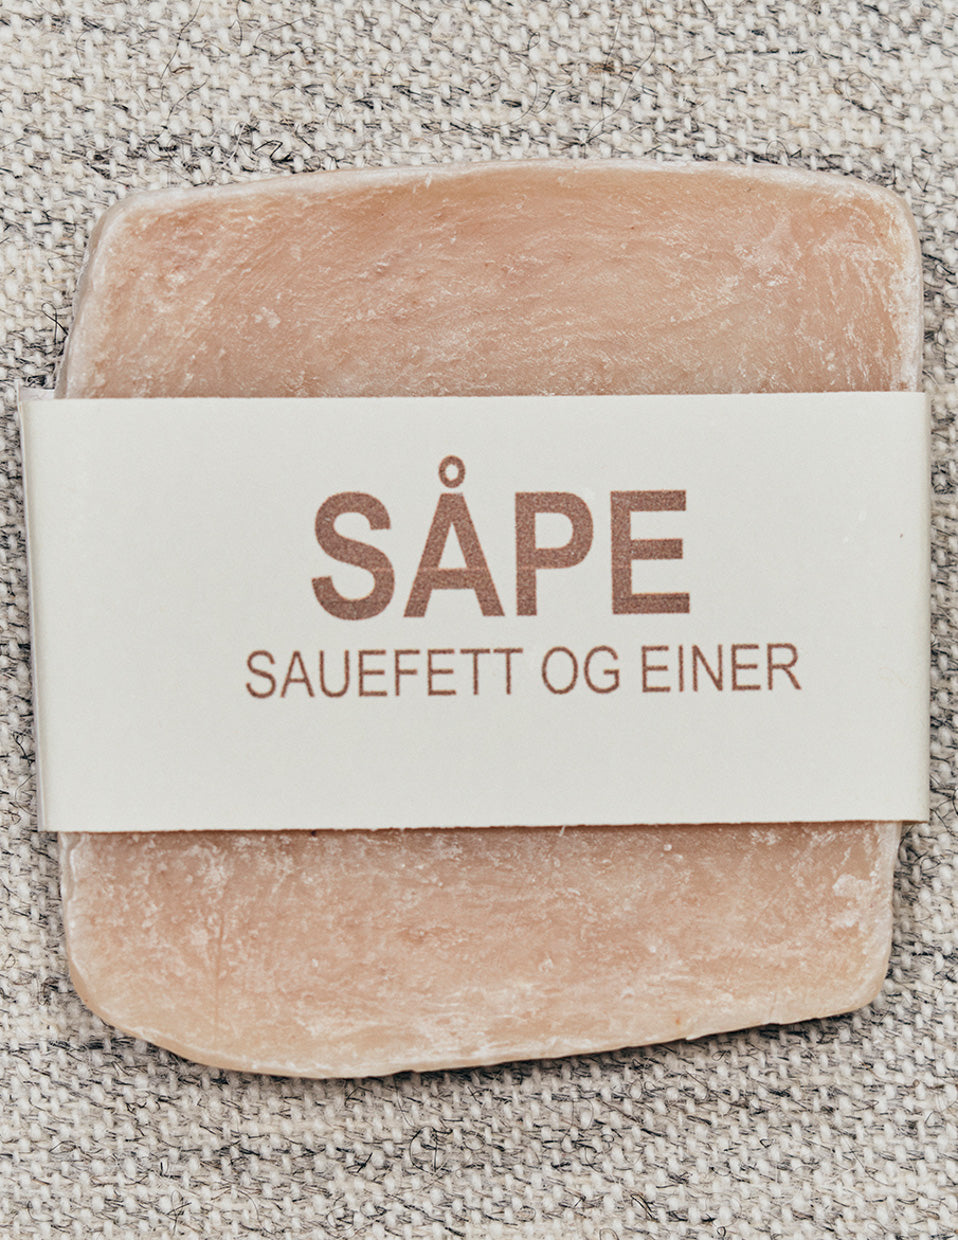 Soap of sheep fat: Juniper